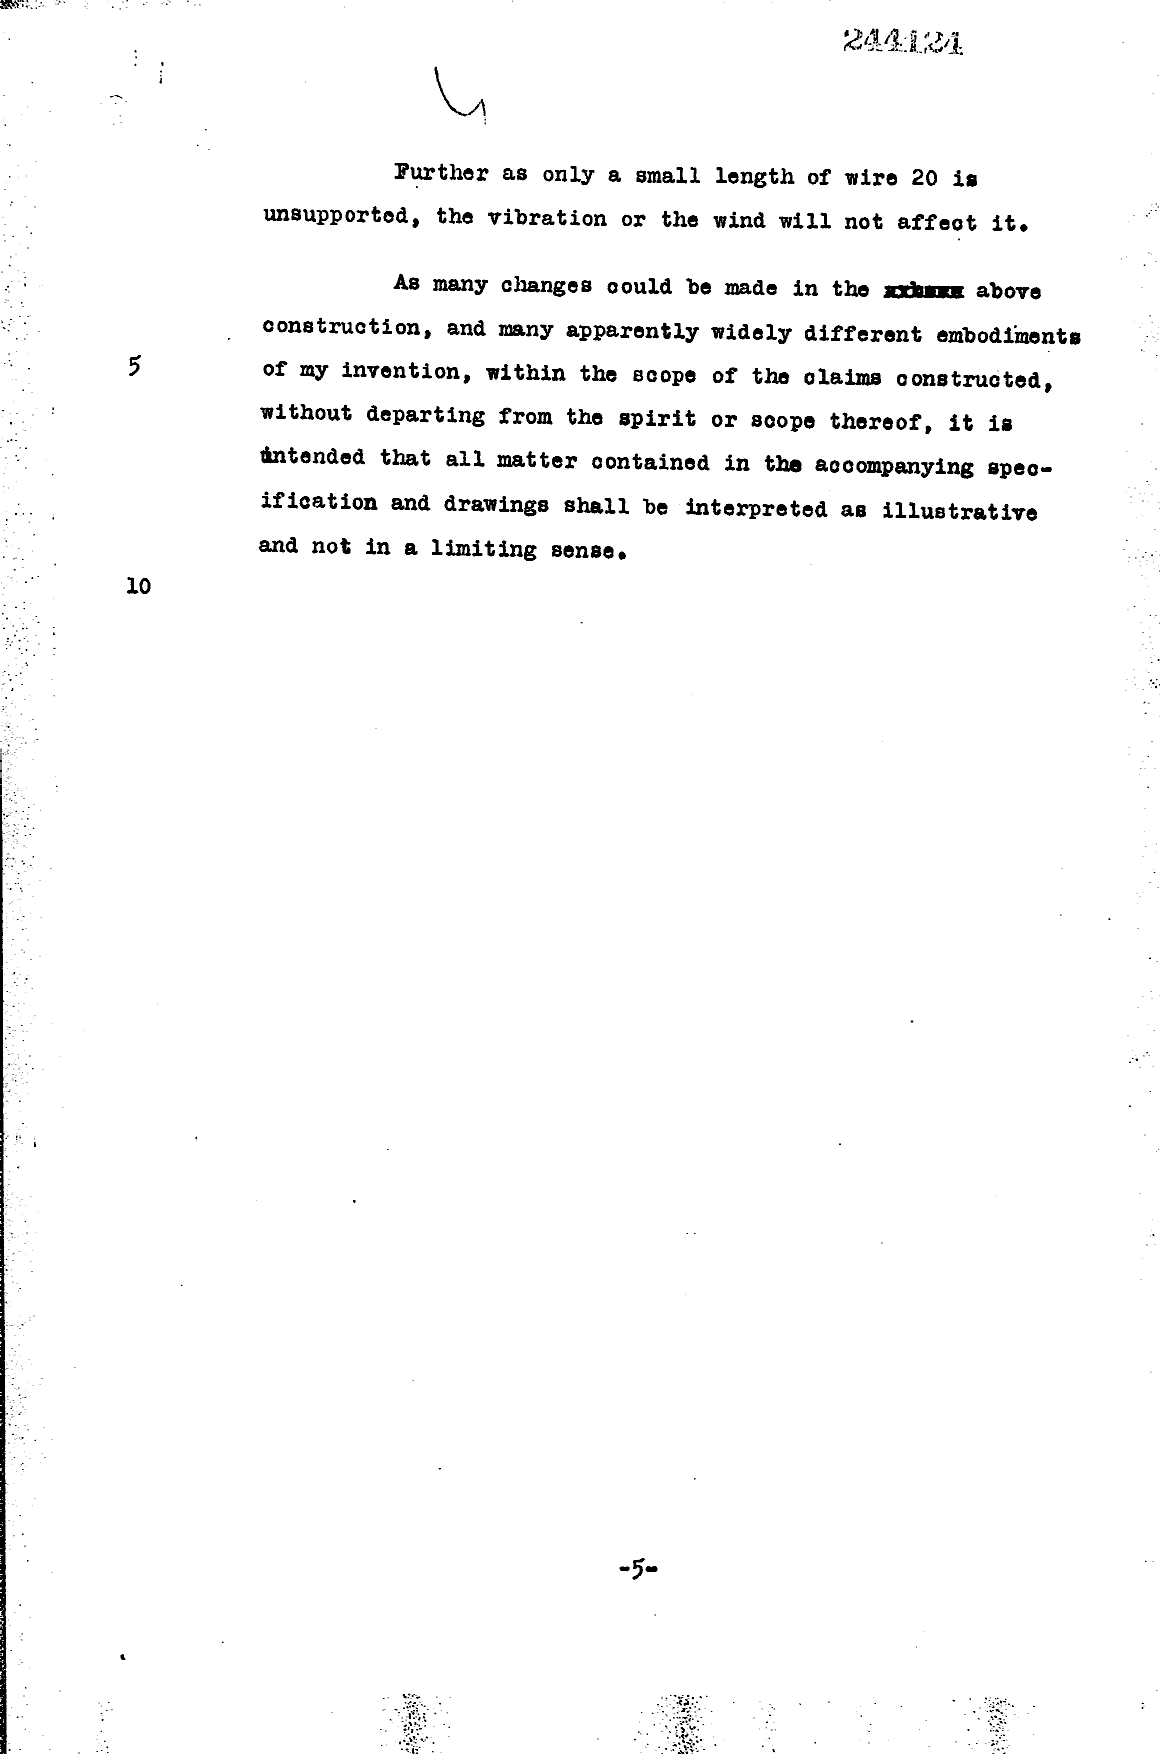 Document de brevet canadien 244124. Description 19951104. Image 4 de 4